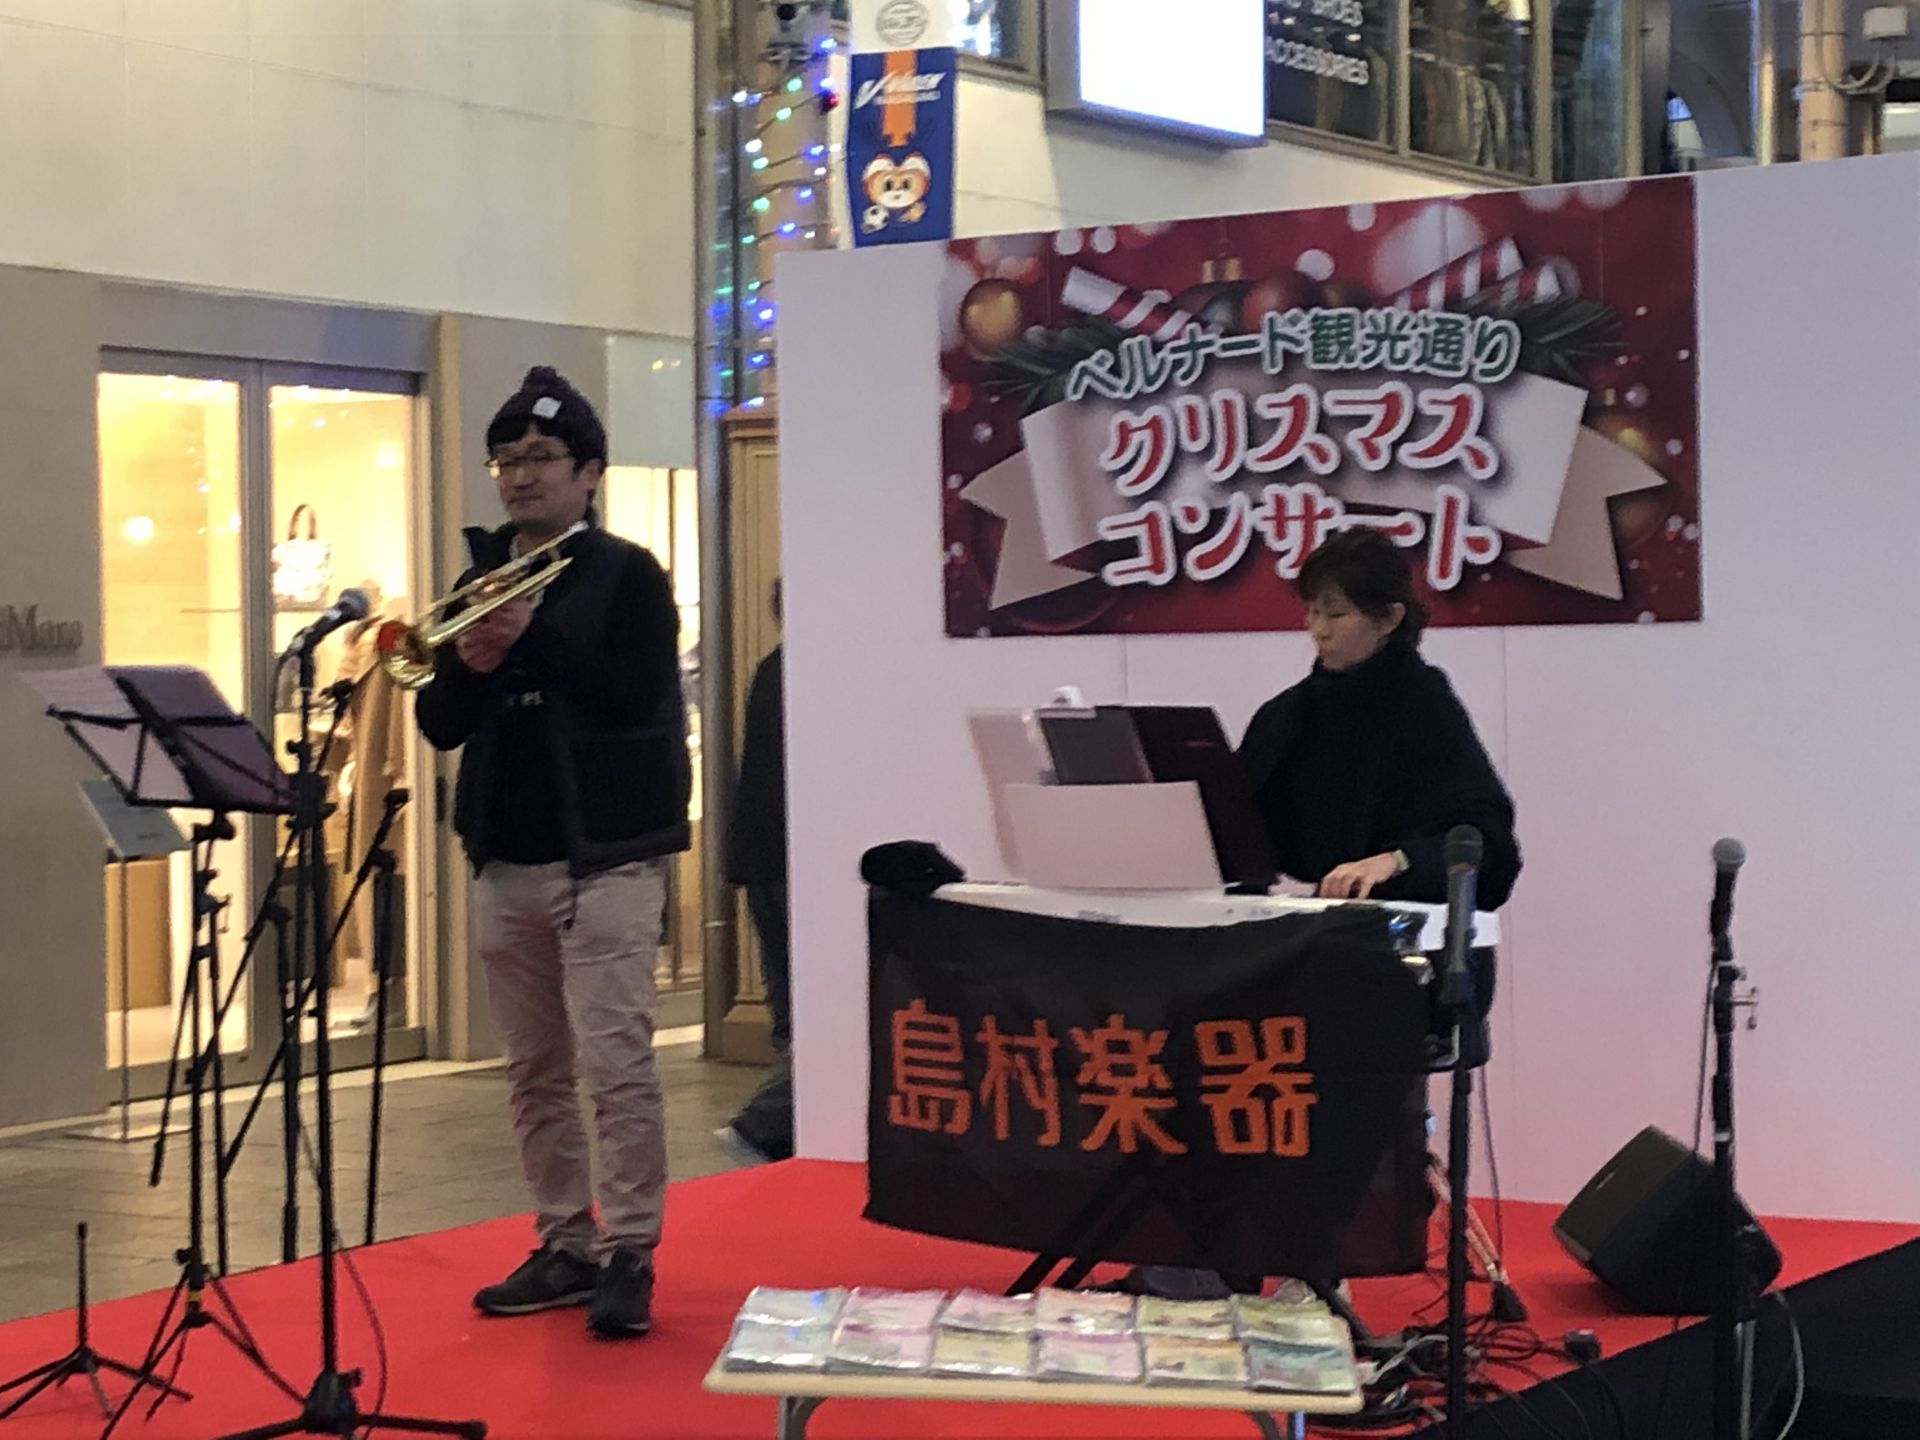 音楽教室かわら版 その13 ベルナード観光通りでクリスマスコンサート開催しました 長崎駅前店 店舗情報 島村楽器